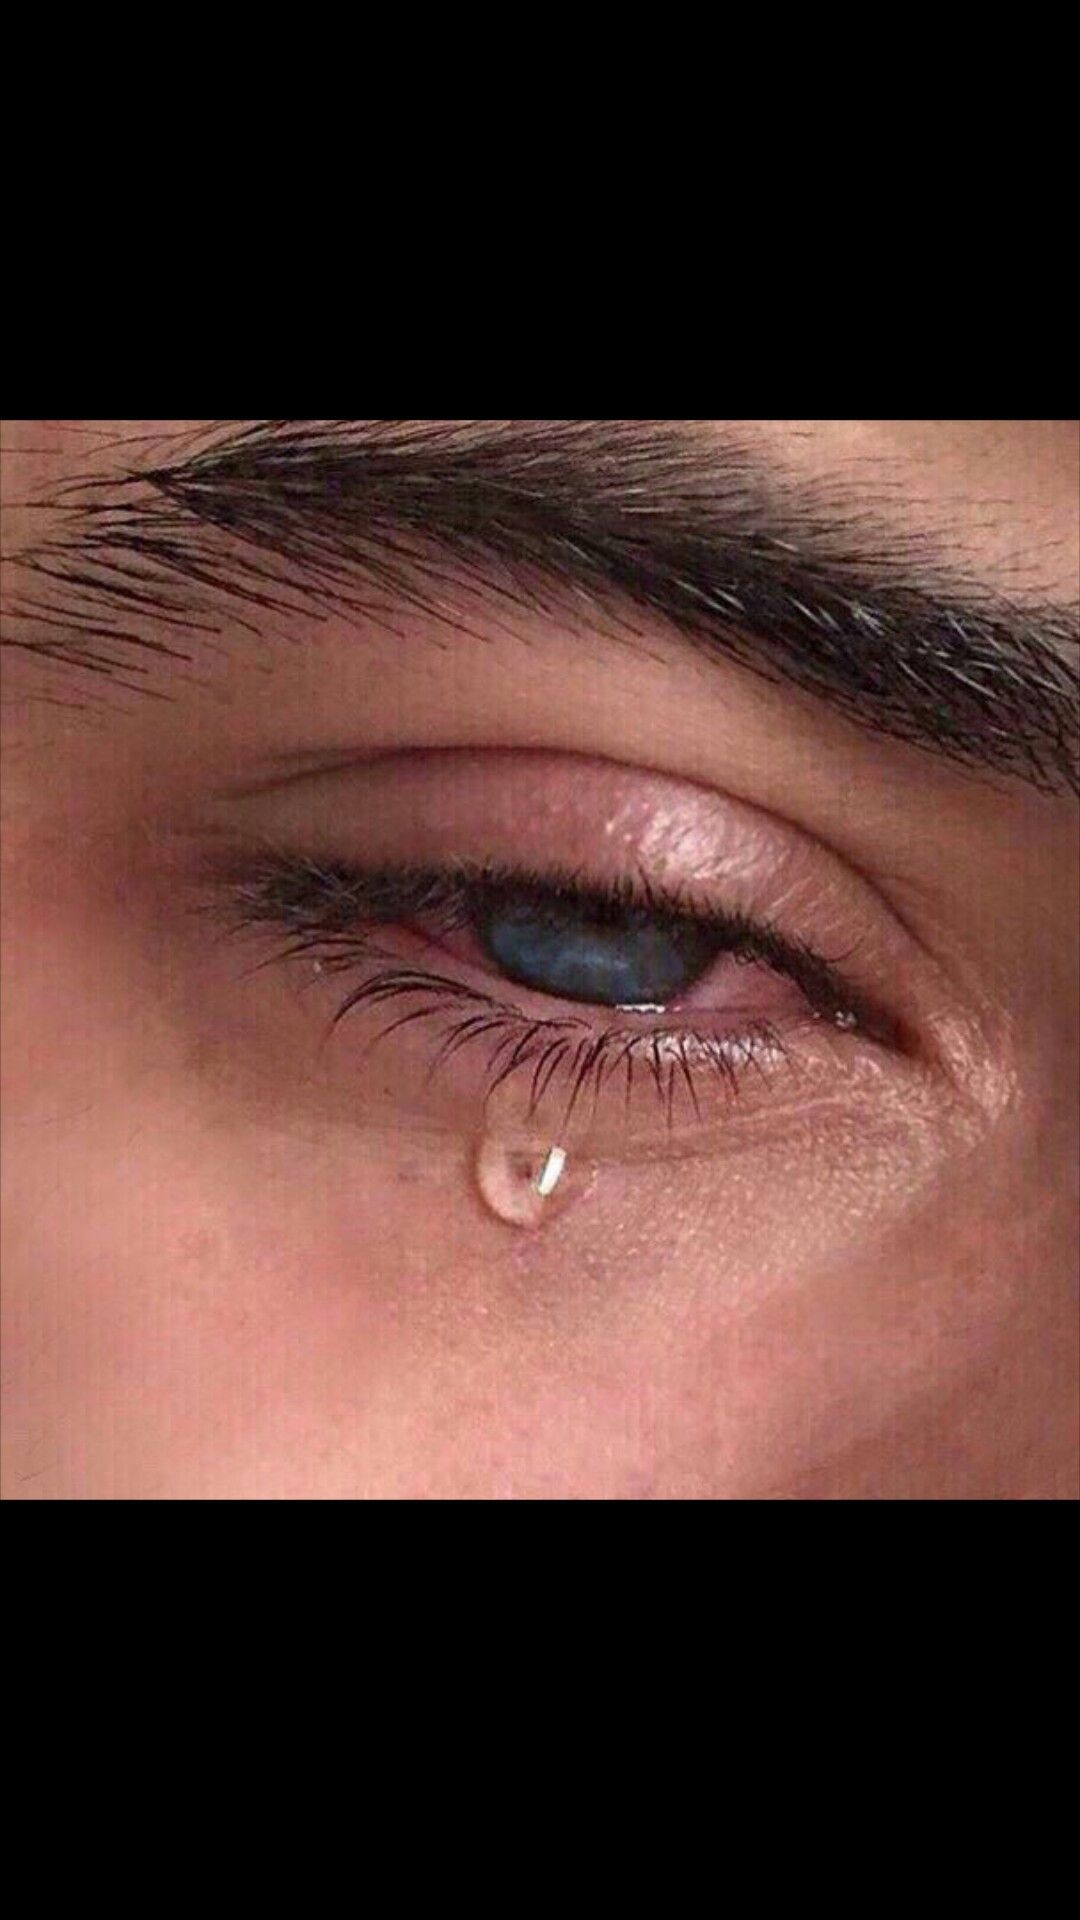 crying eye man